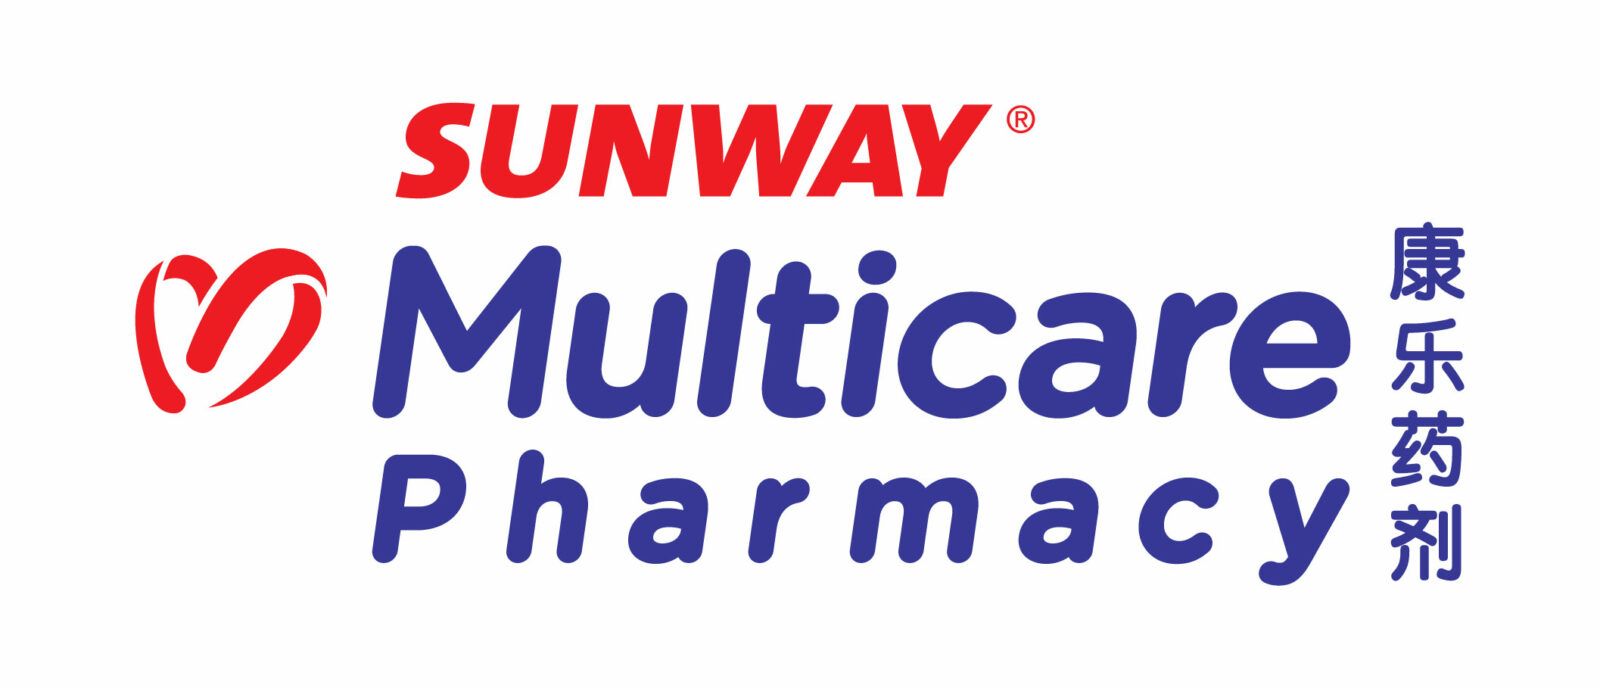 Sunway multicare